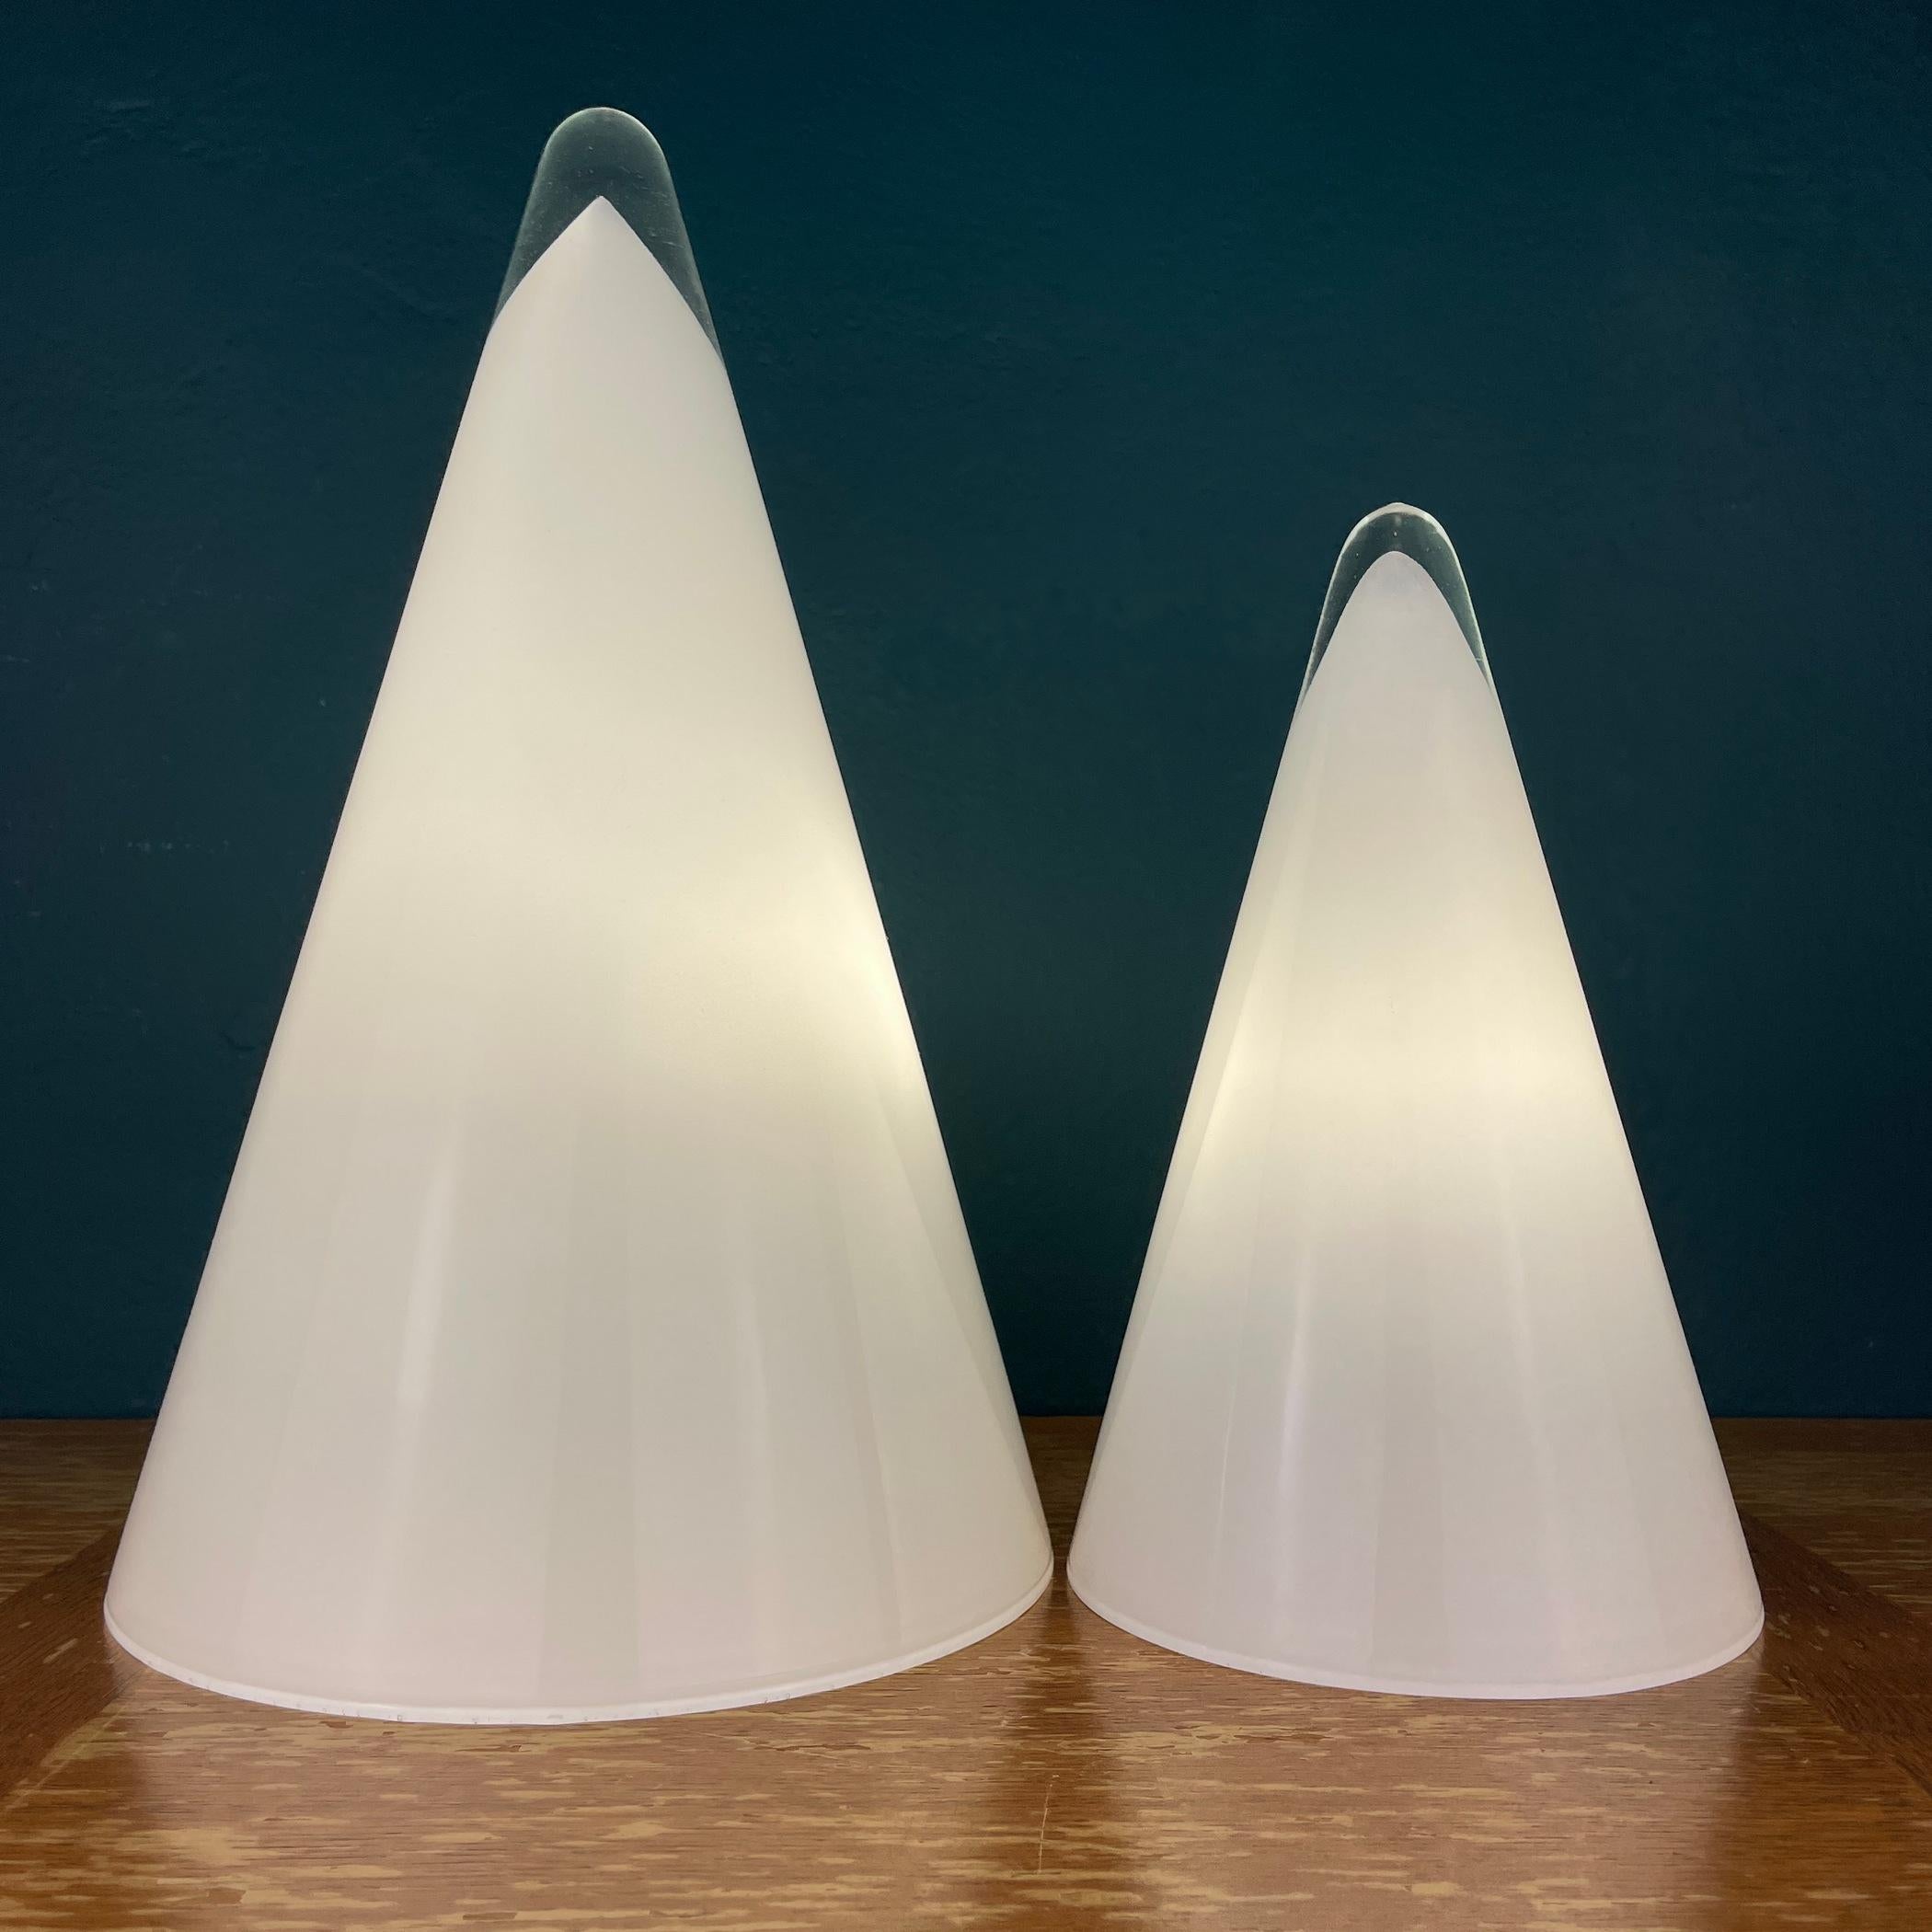 Paire de magnifiques lampes coniques Murano fabriquées en Italie dans les années 1970. Excellent état, aucun dommage. Longueur du câble 240 cm. Prise européenne. Grande lampe : Hauteur : 35 centimètres Largeur : 22 centimètres Petite lampe : Hauteur